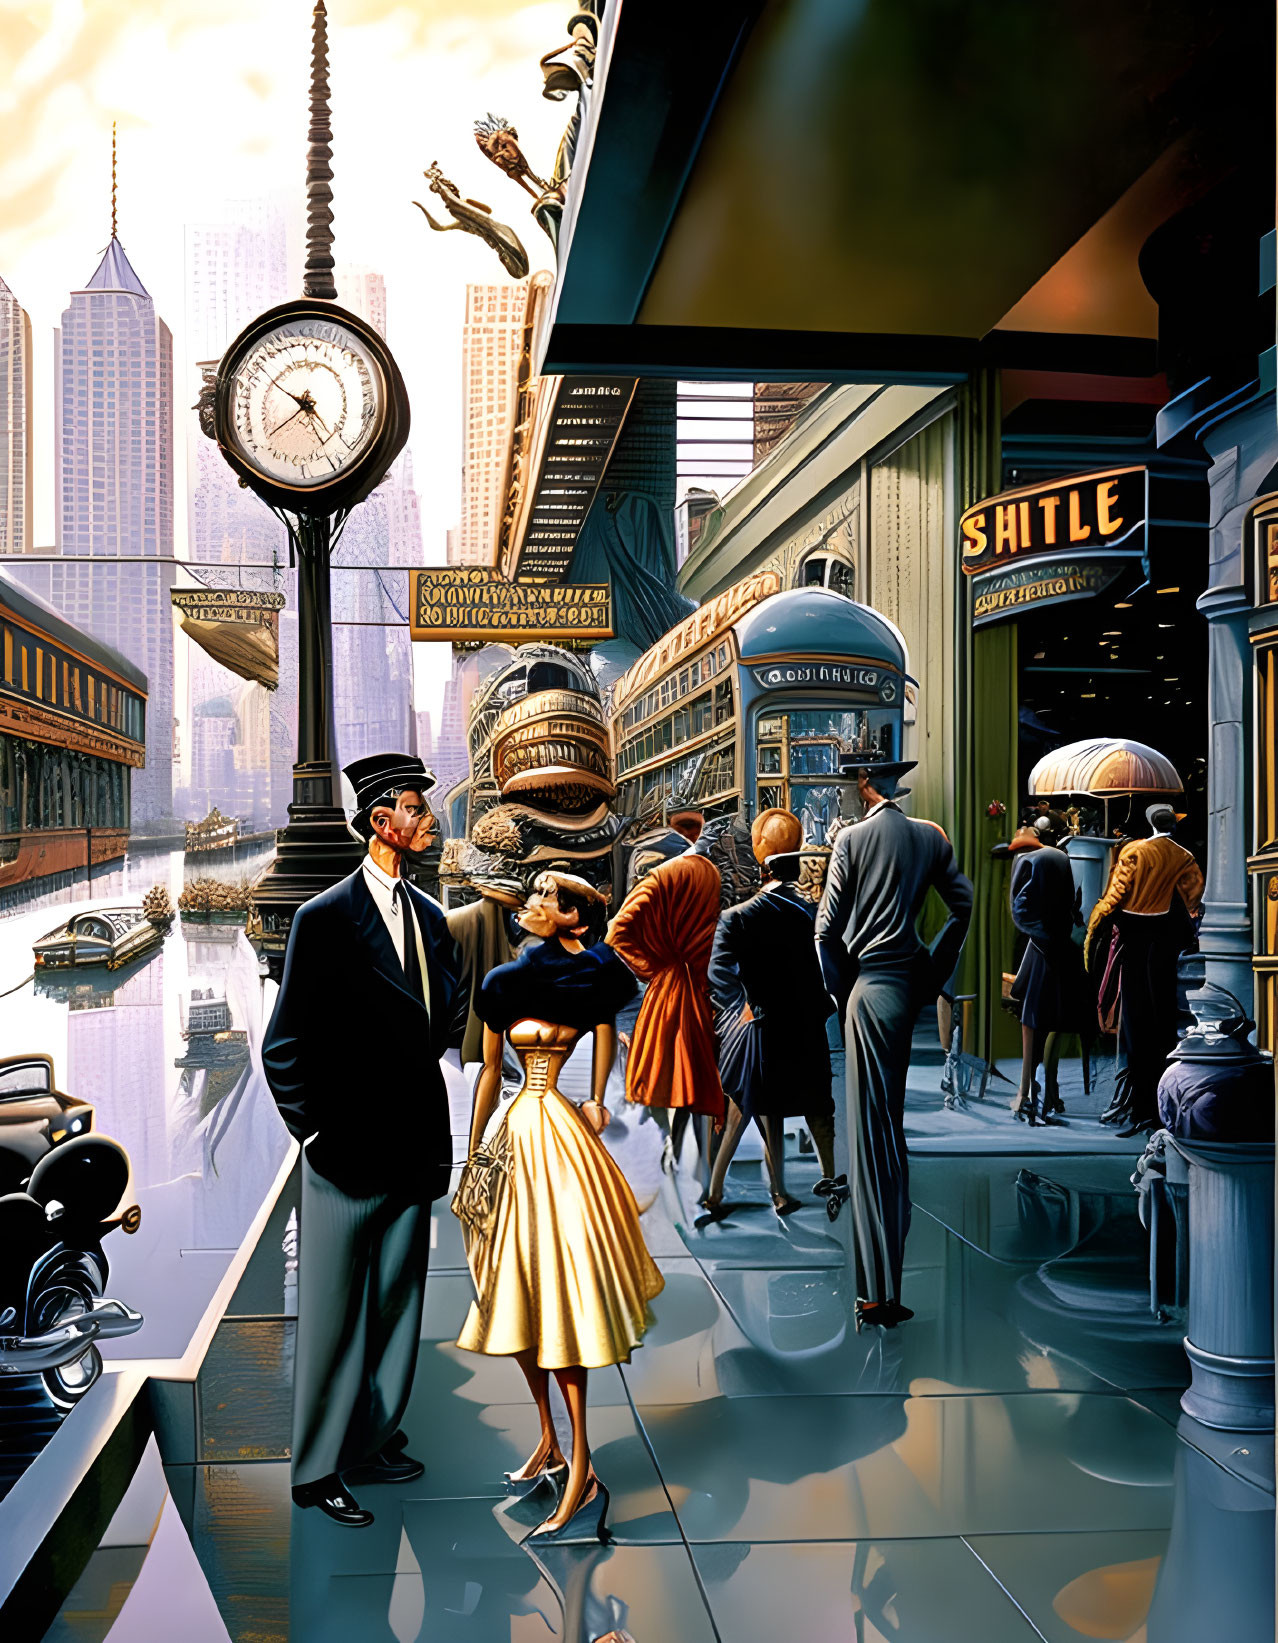 Vintage attire, elevated trains, art deco architecture, and ornate clock in retro-futuristic city